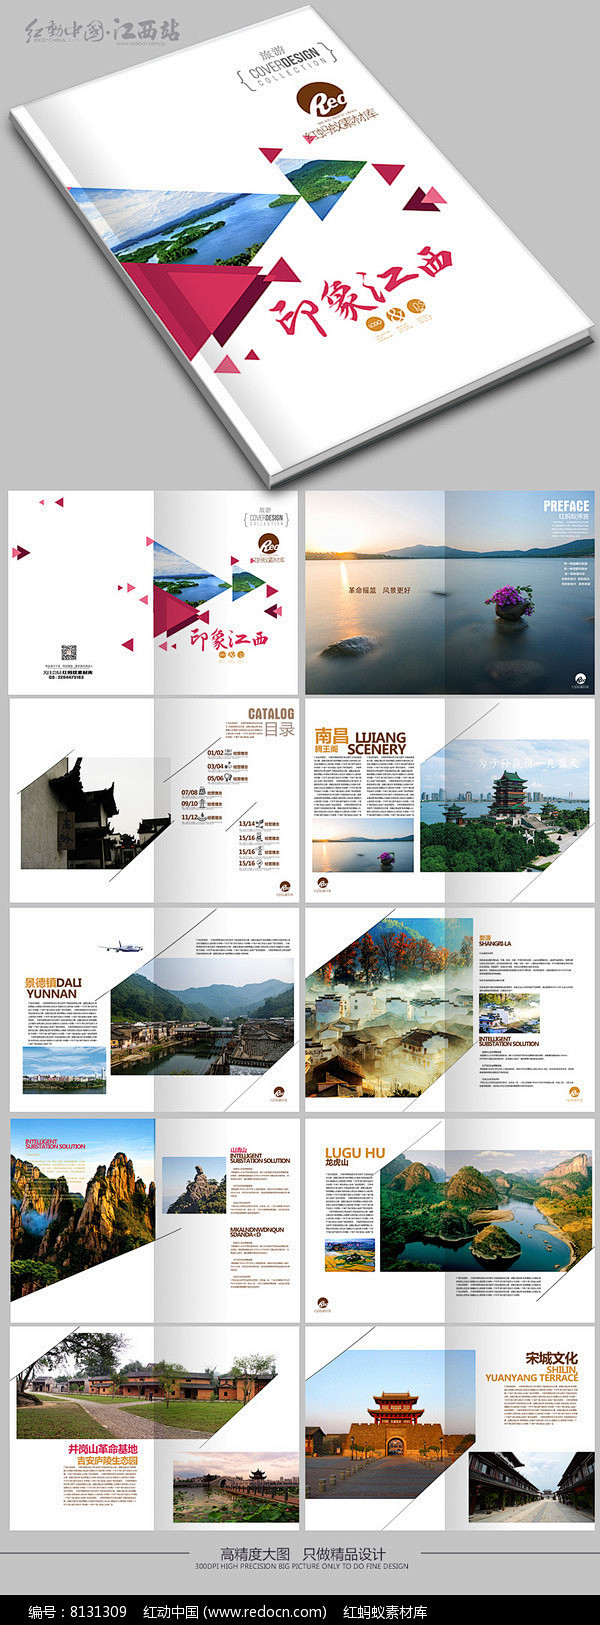 旅游画册 旅游画册模板 旅游画册设计 旅游宣传册 旅游画册封面 旅游